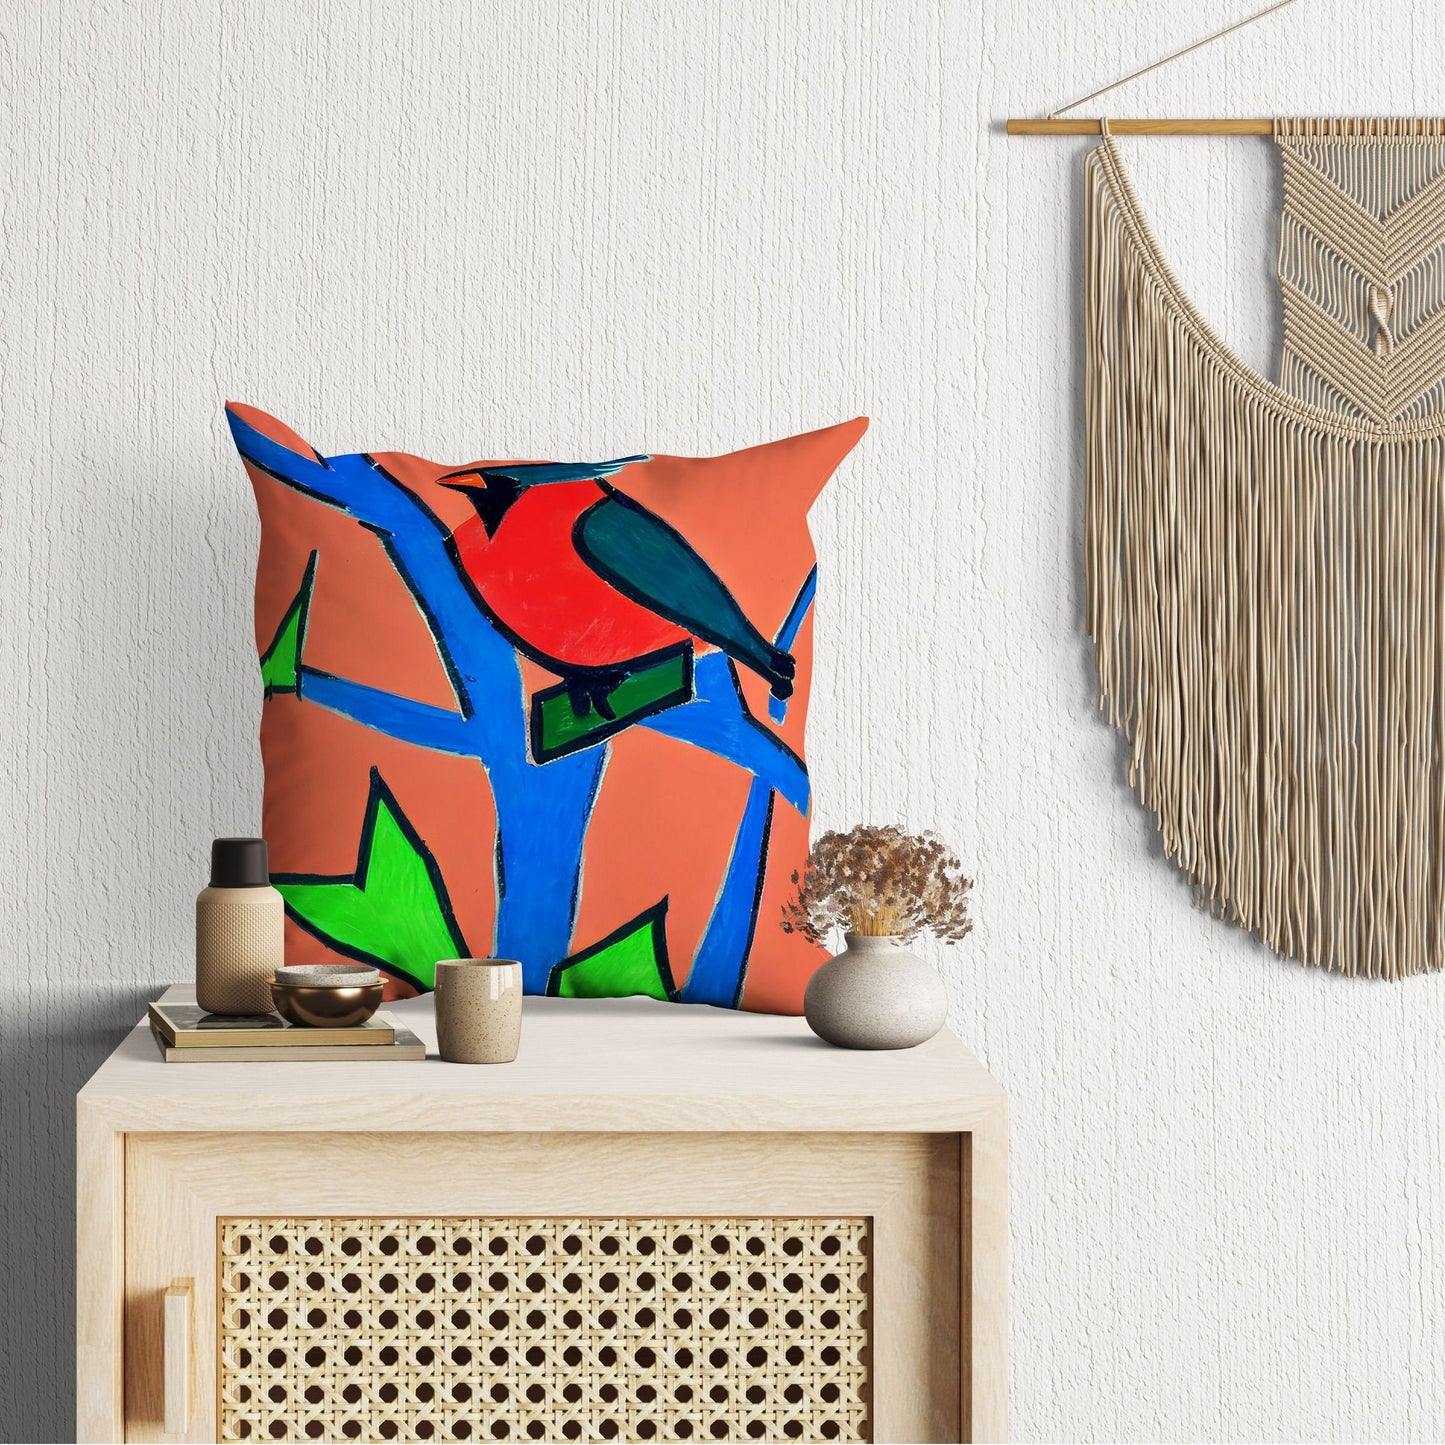 North American Cardinals Bird Throw Pillow, Abstract Throw Pillow Cover, Art Pillow, Colorful Pillow Case, Contemporary Pillow